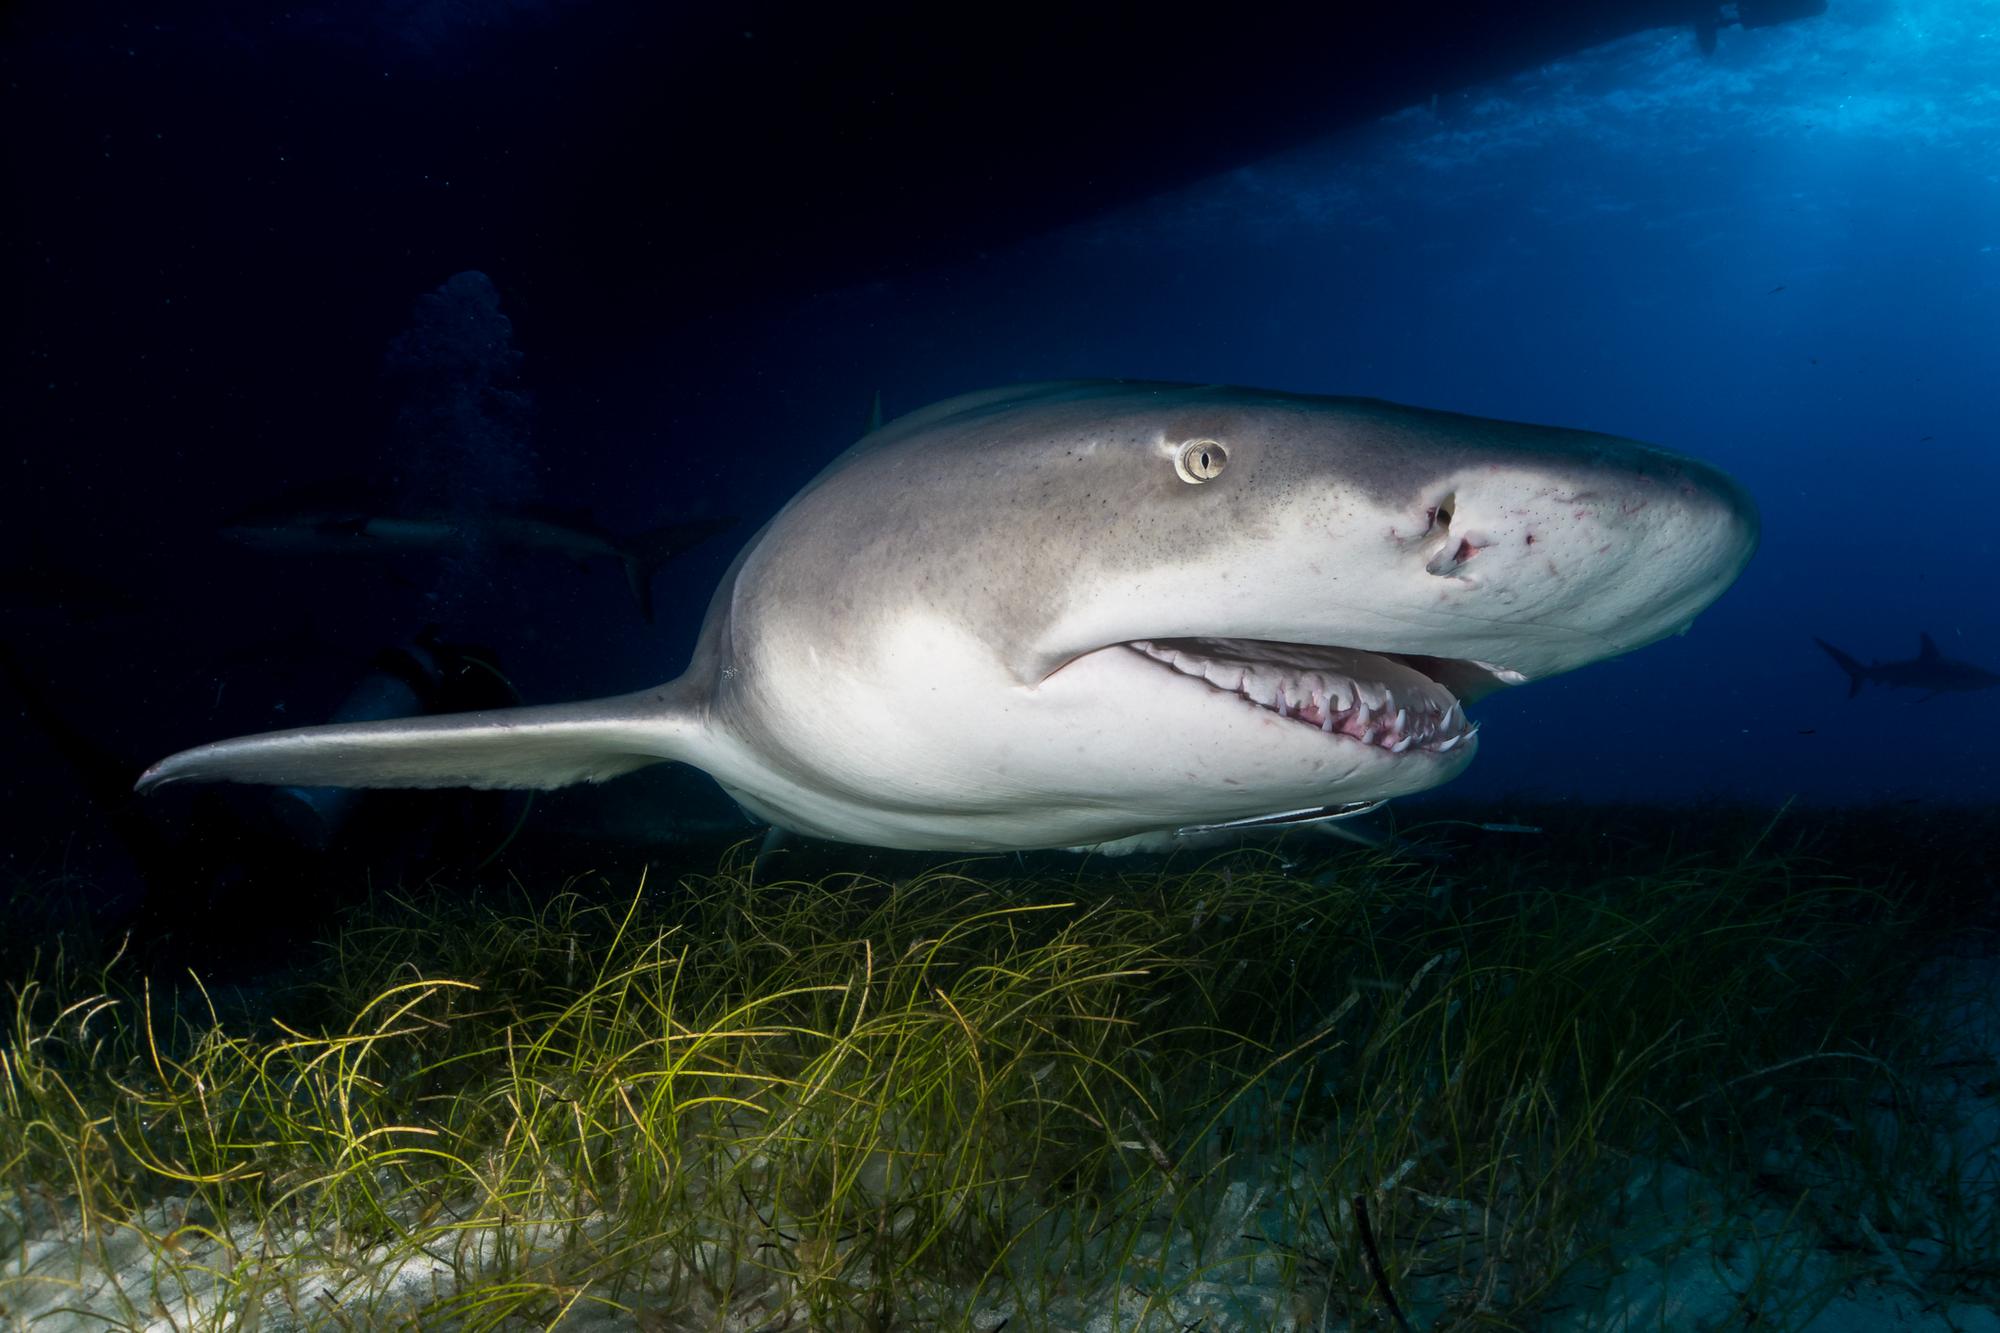 Tieto žraloky môžu dorastať do obrovských dĺžok.